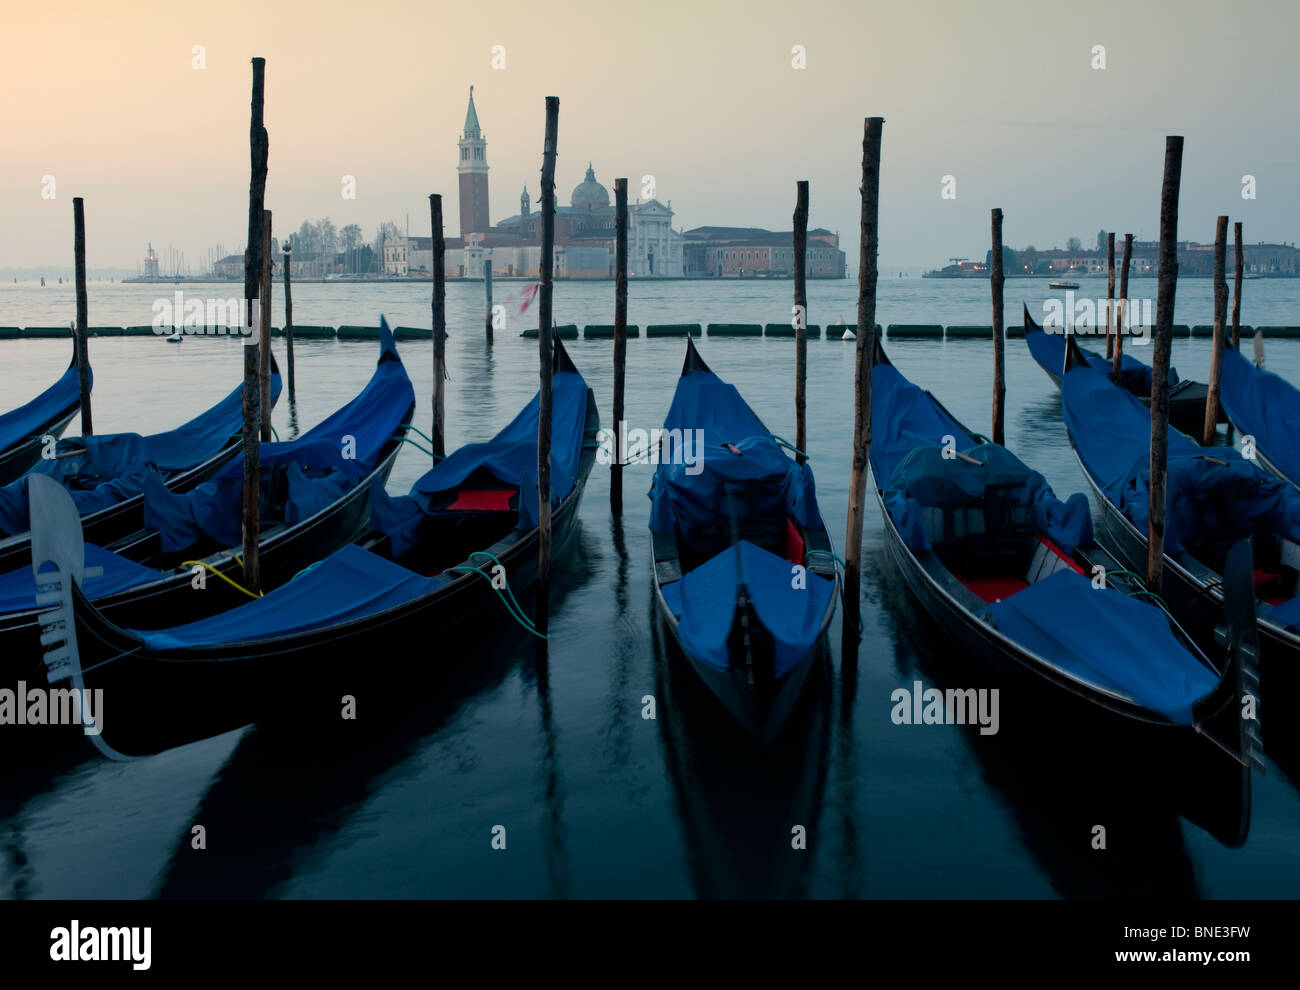 Les gondoles amarrées à l'aube sur le grand canal à Venise Italie Banque D'Images